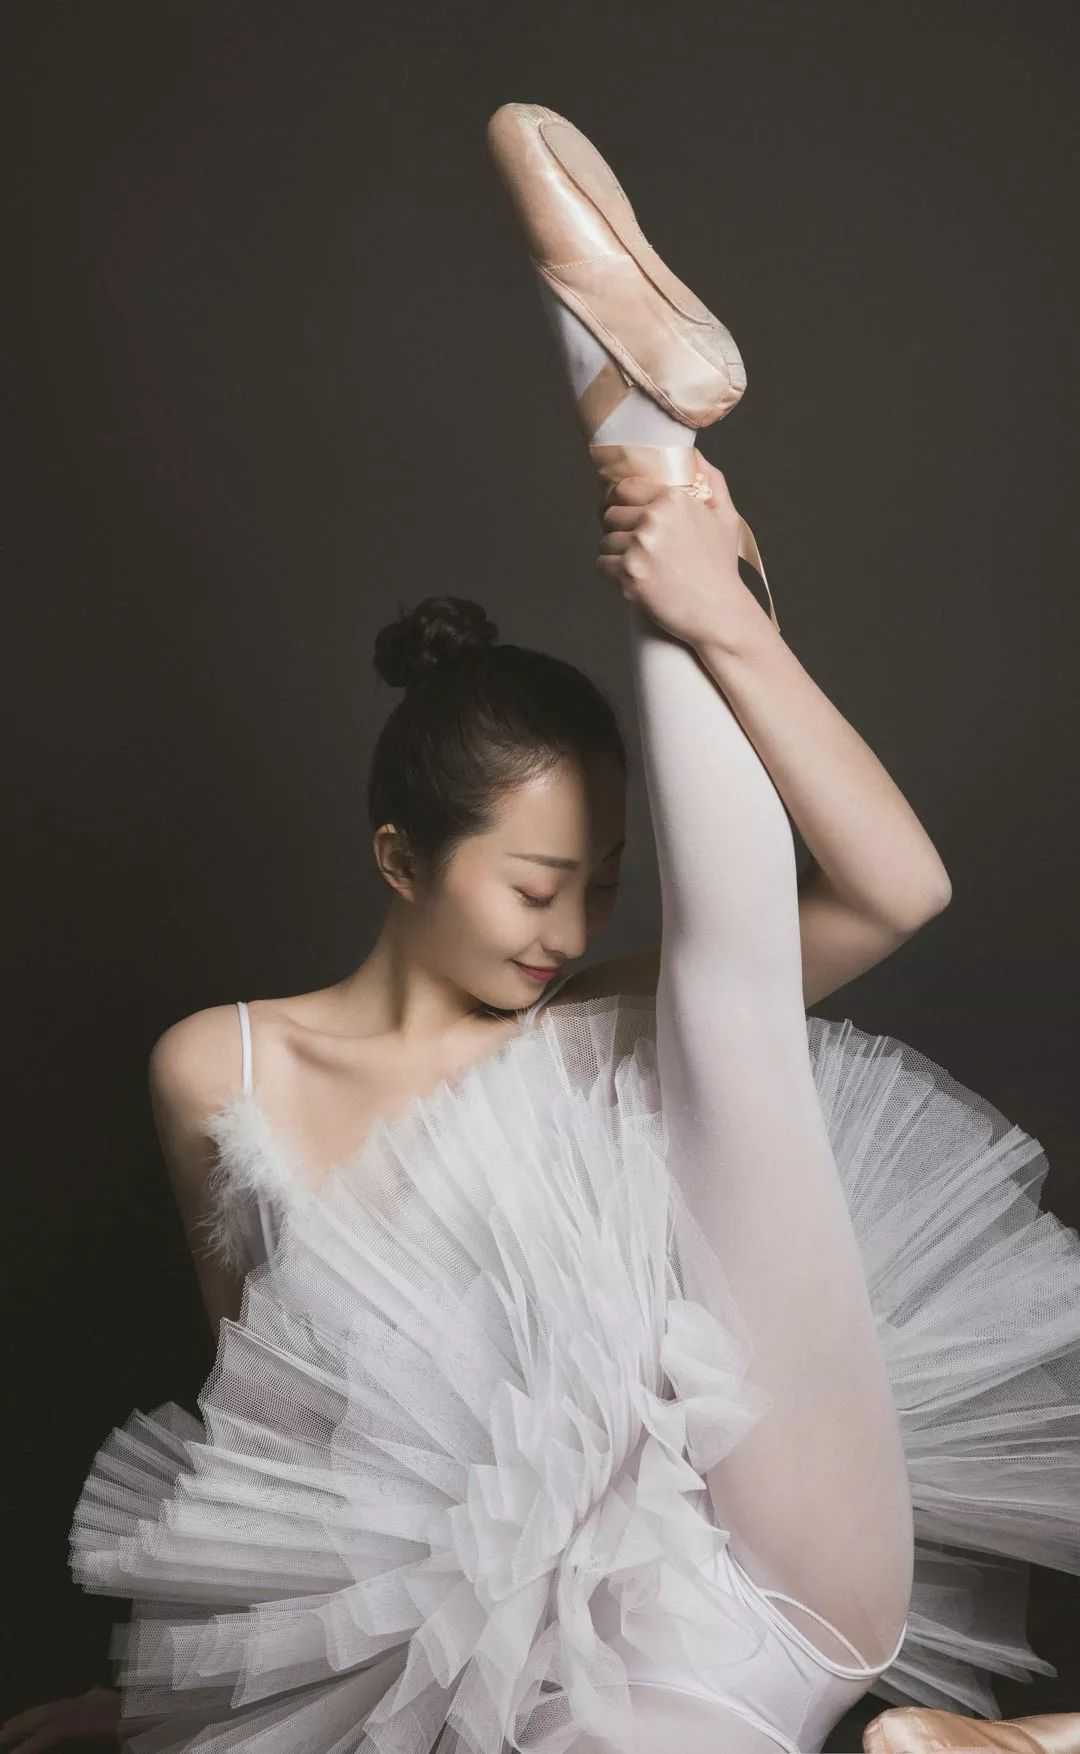 芭蕾舞女孩展示白色丝袜_白丝袜_中国丝袜网